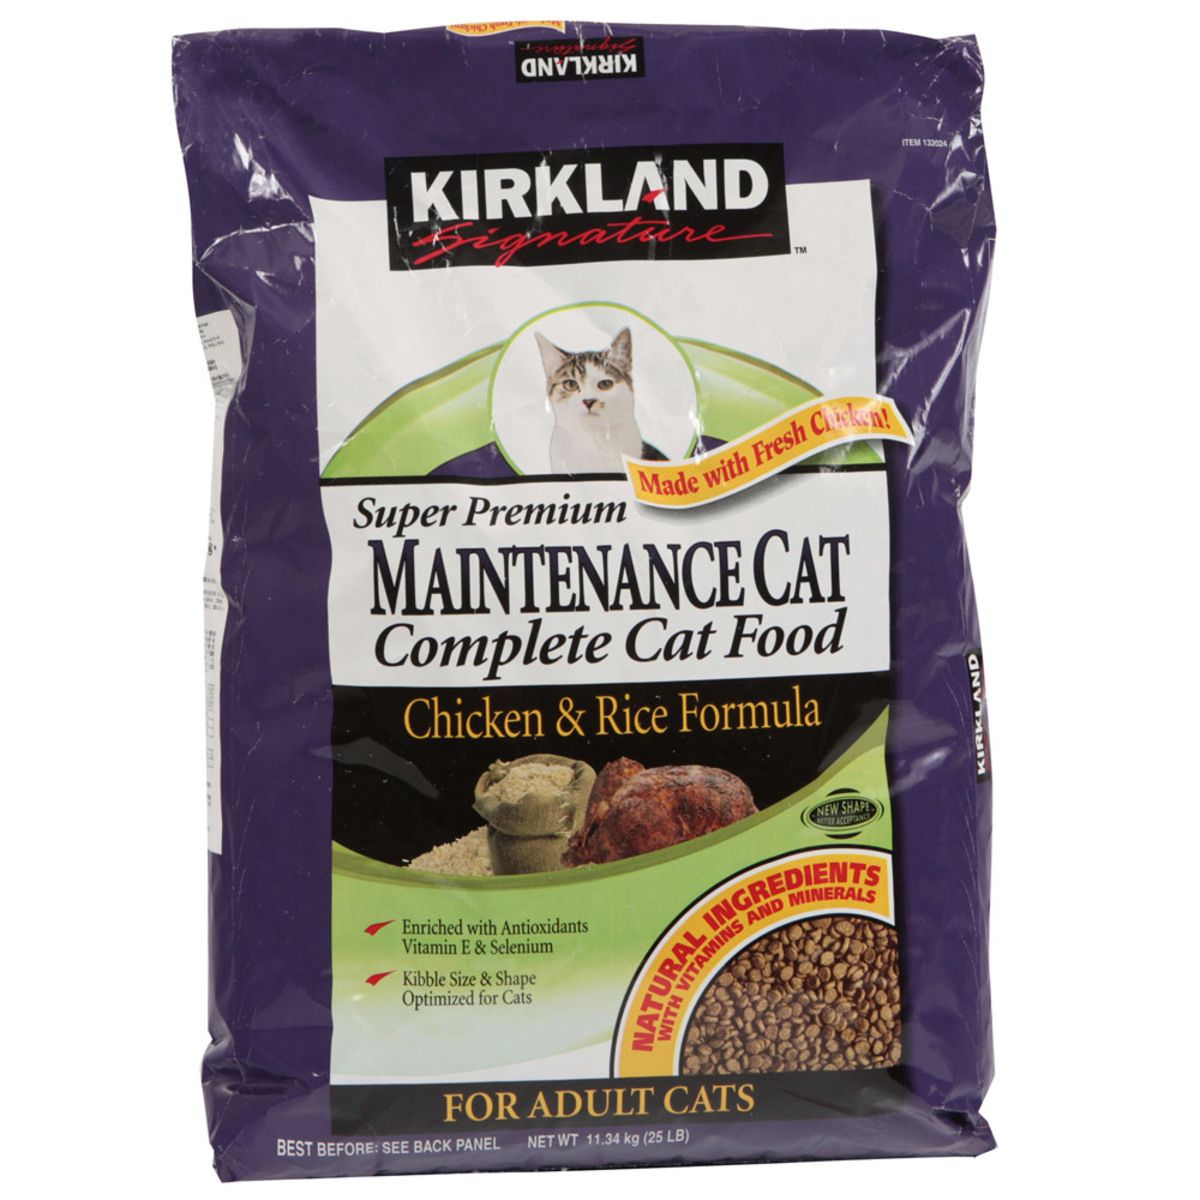 Kirkland Signature Super Premium Adult Complete Cat Food, Chicken & Rice Formula, 11.34kg